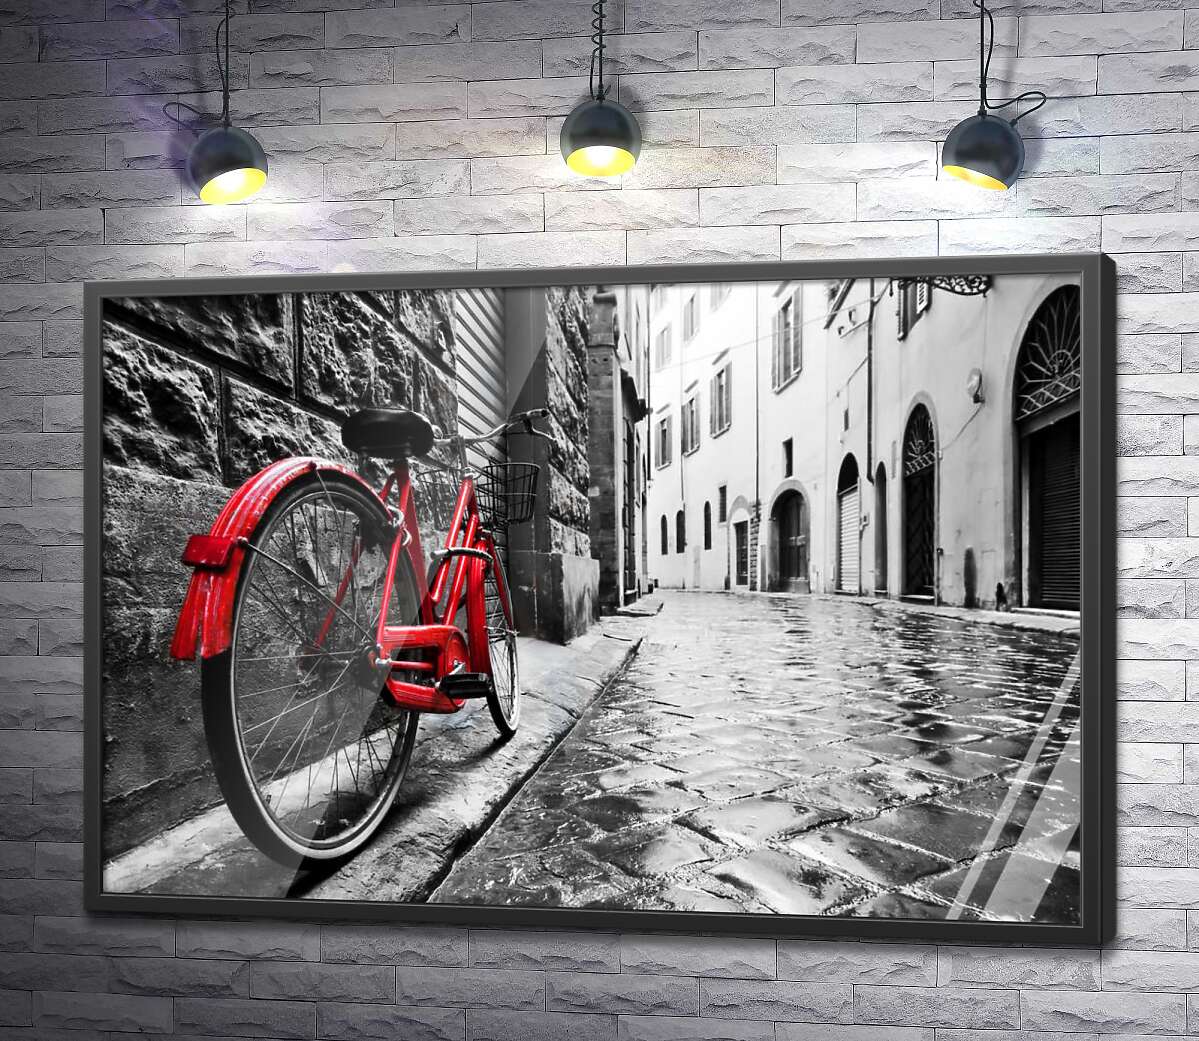 постер Велосипед придает цвет серой атмосфере улицы